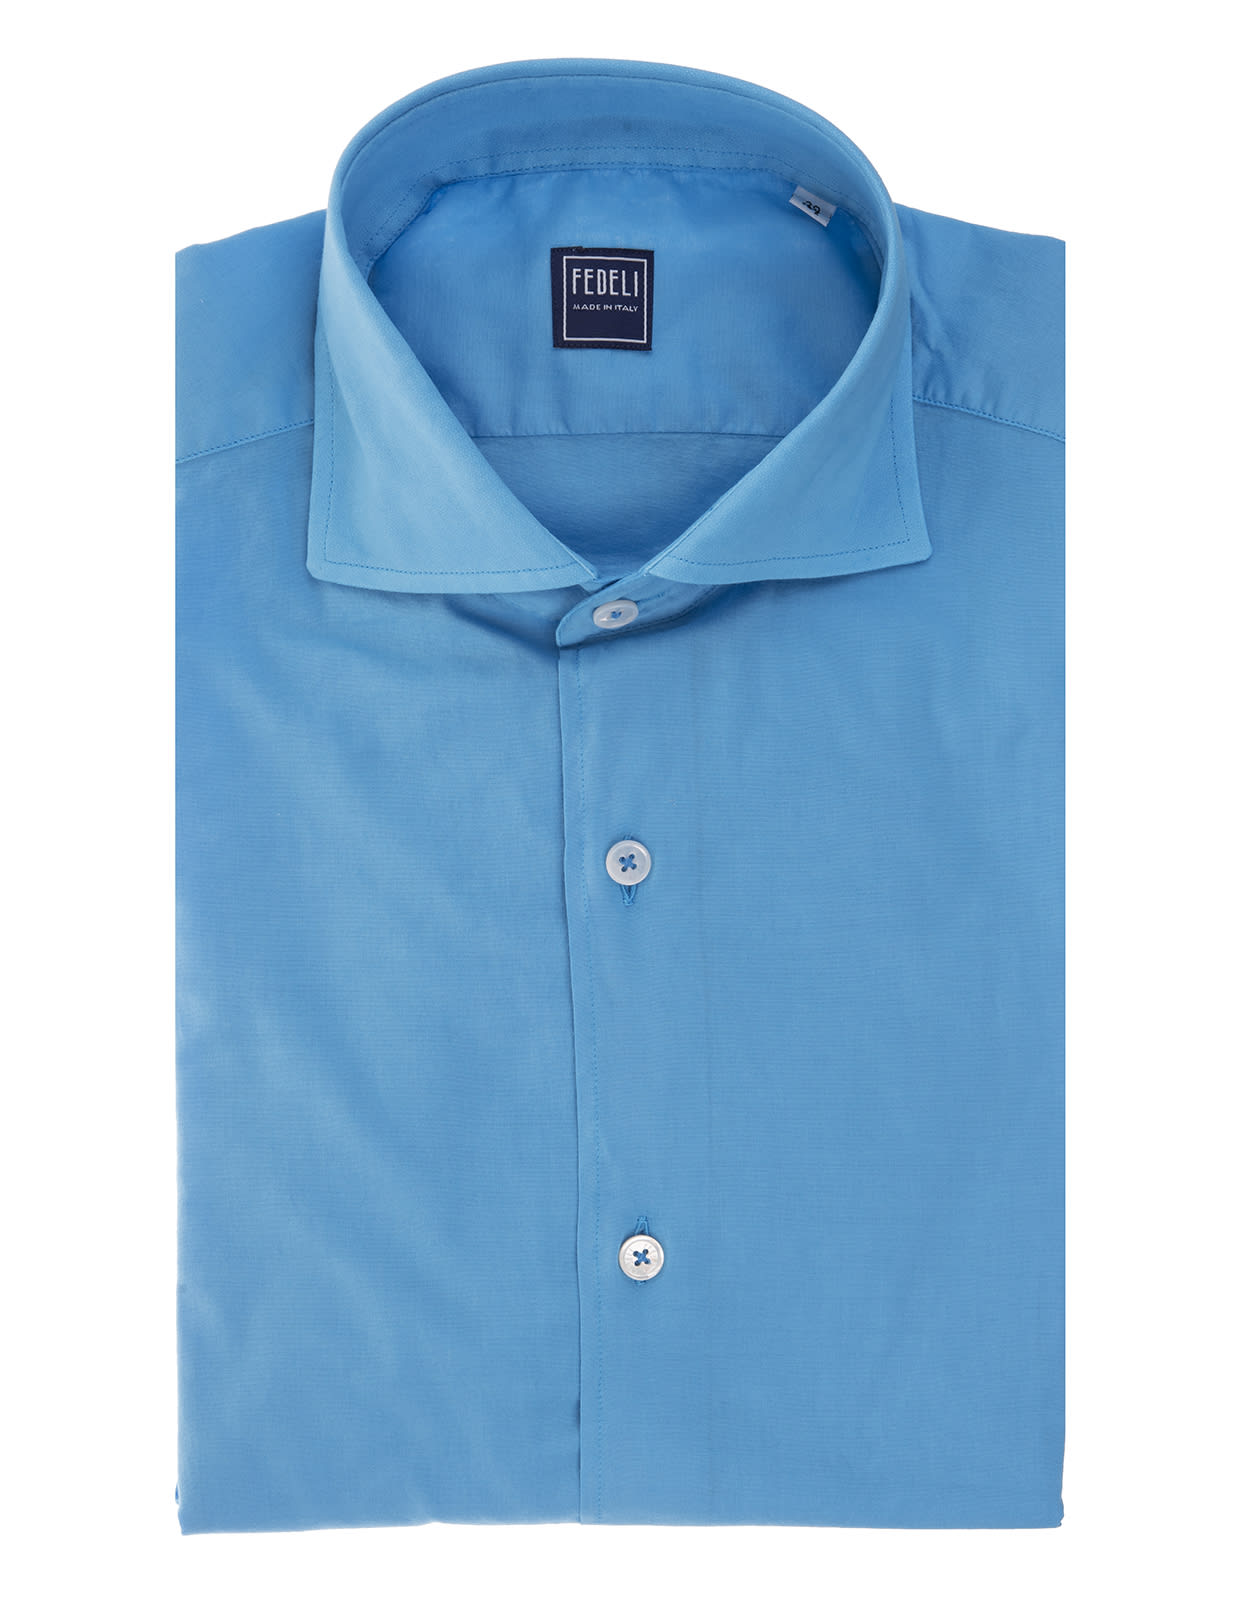 Fedeli Man Light Blue Lightweight Cotton Shirt